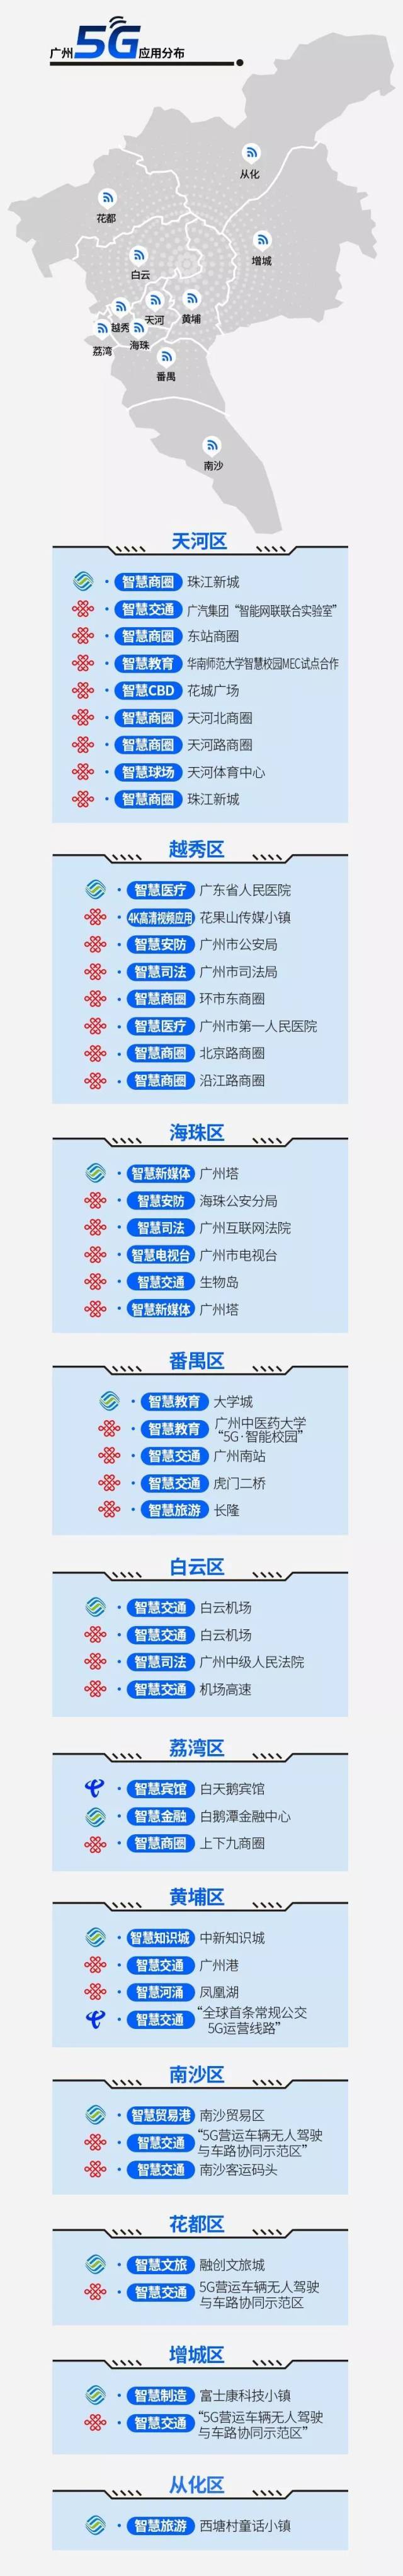 广州将建1万座5g基站11区如何分布